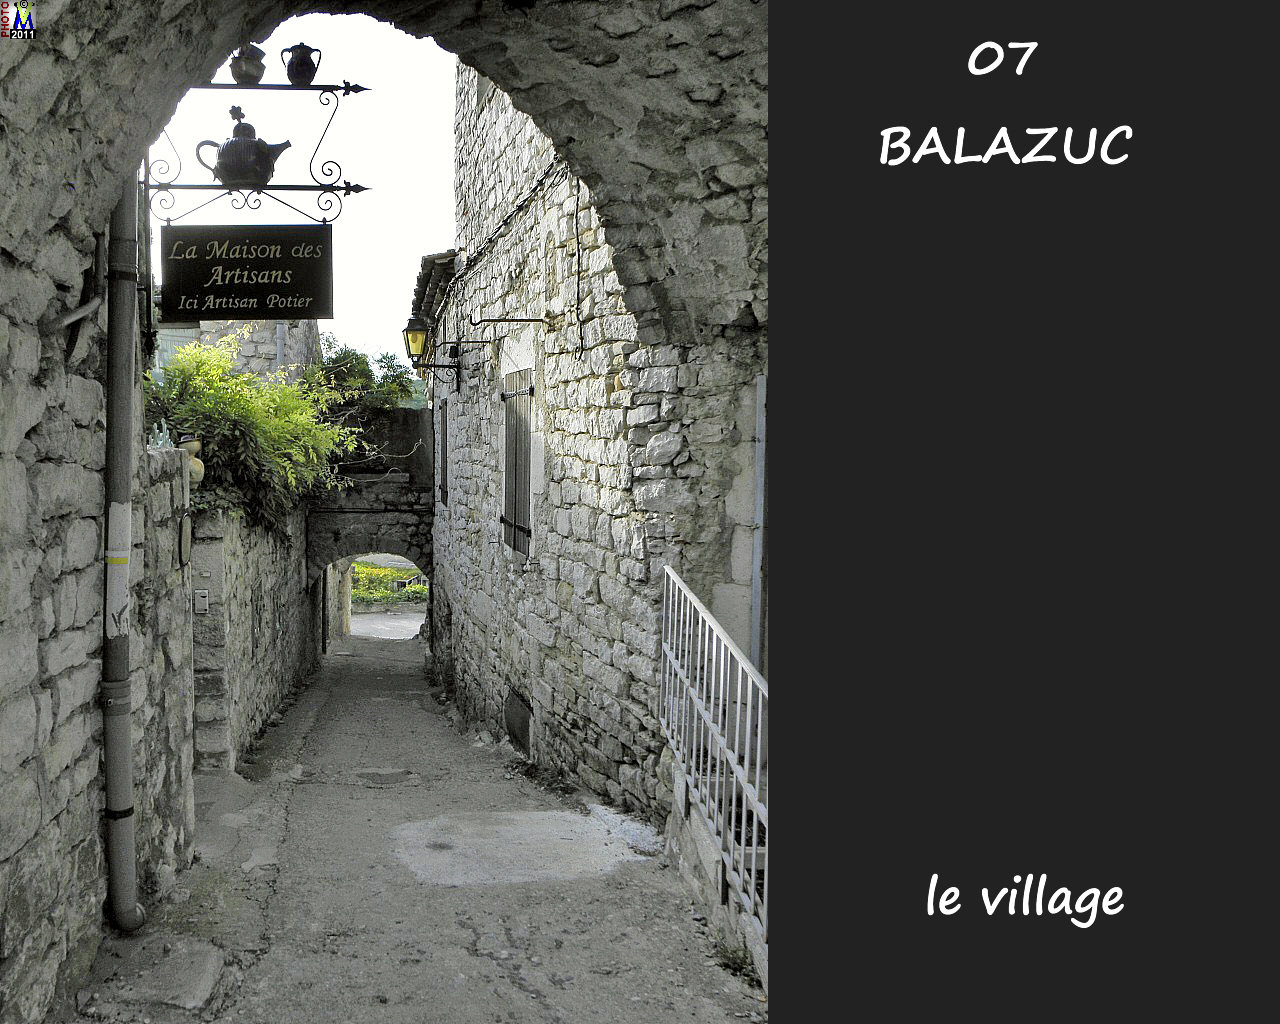 07BALAZUC_village_166.jpg